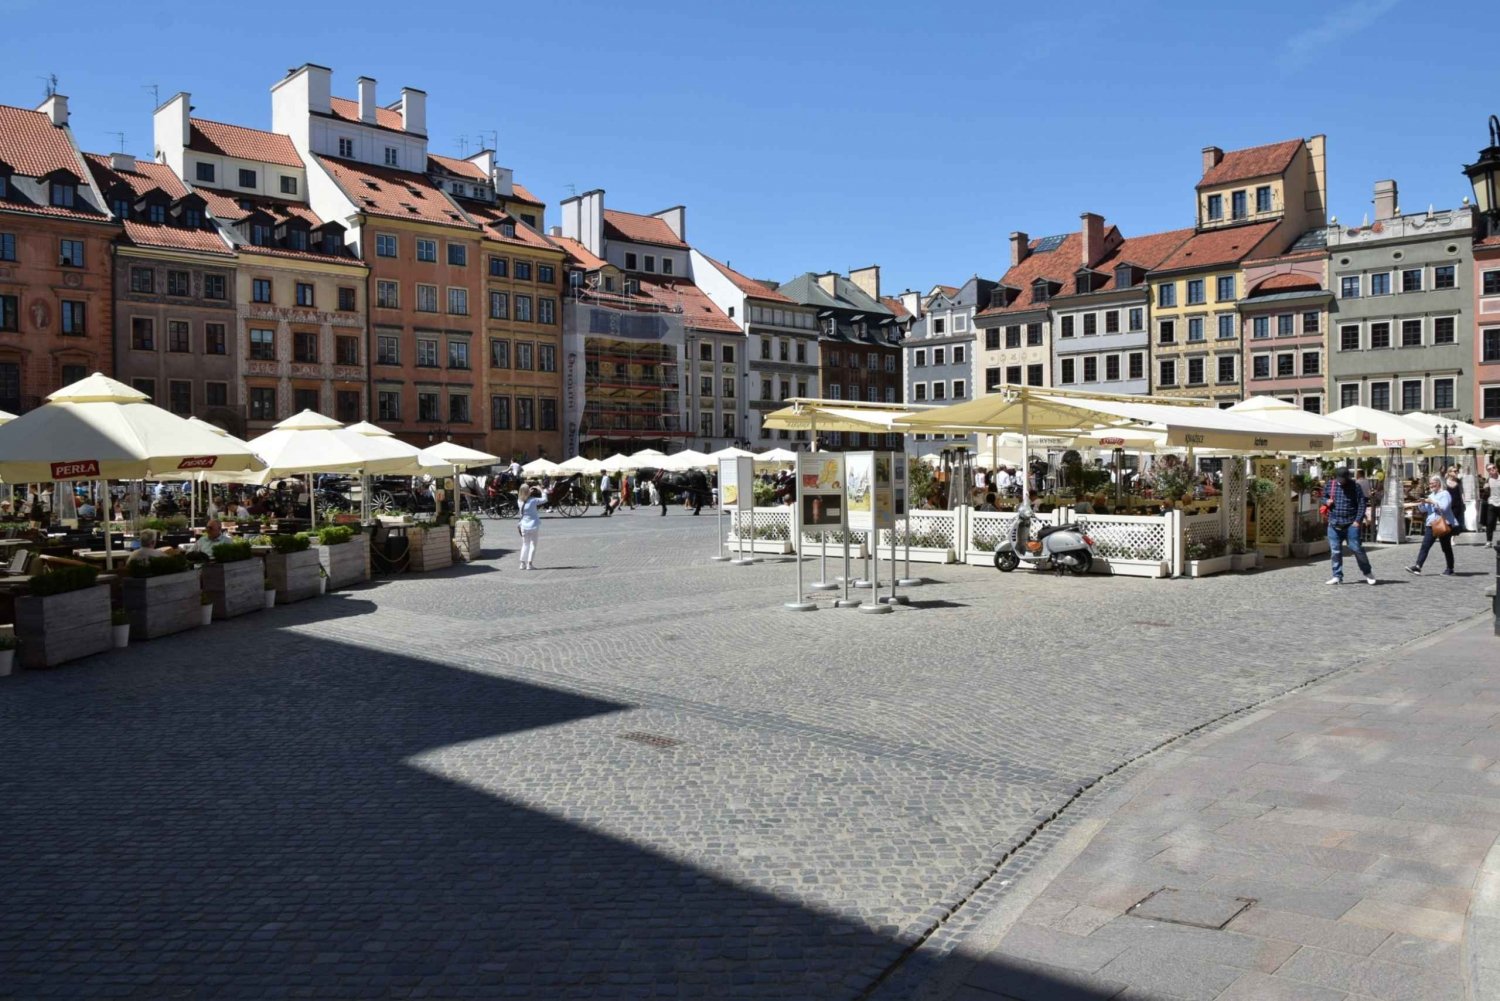 Warsaw Old Town & More Walking Tour